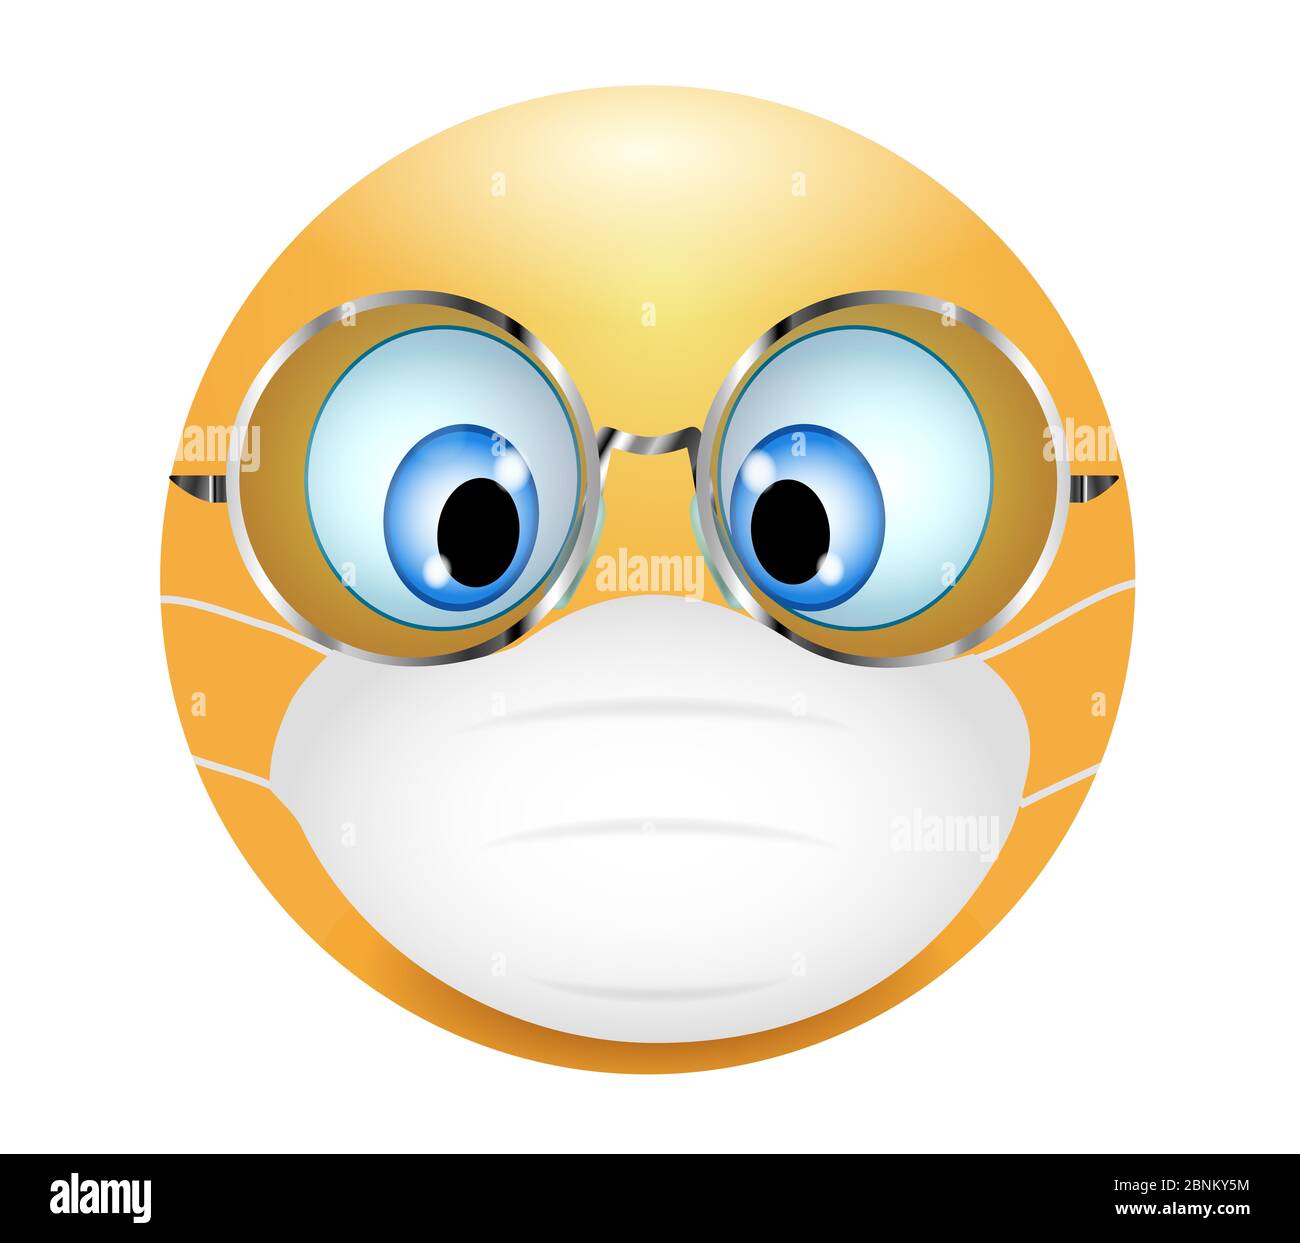 Emoticono de emoji usando máscara médica y gafas. ilustración 3d. Emoticono divertido. Concepto de protección contra brotes coronavirus - gérmenes - contaminación del aire. Foto de stock